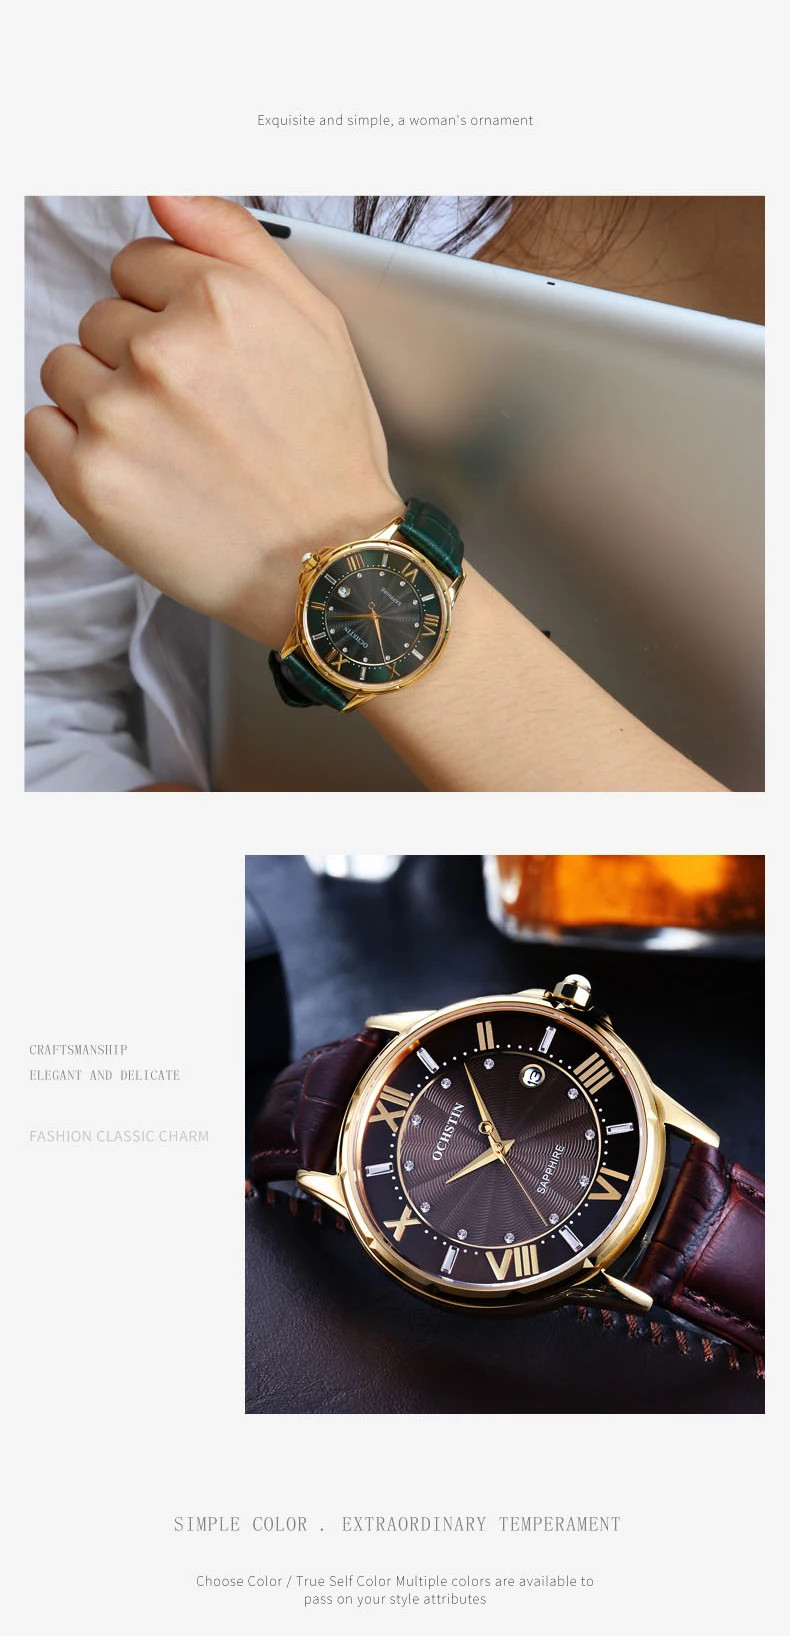 OCHSTIN 2019 мужские классические часы лучший бренд класса люкс бизнес мужской наручные кварцевые часы водостойкий ручной часы relogio masculino